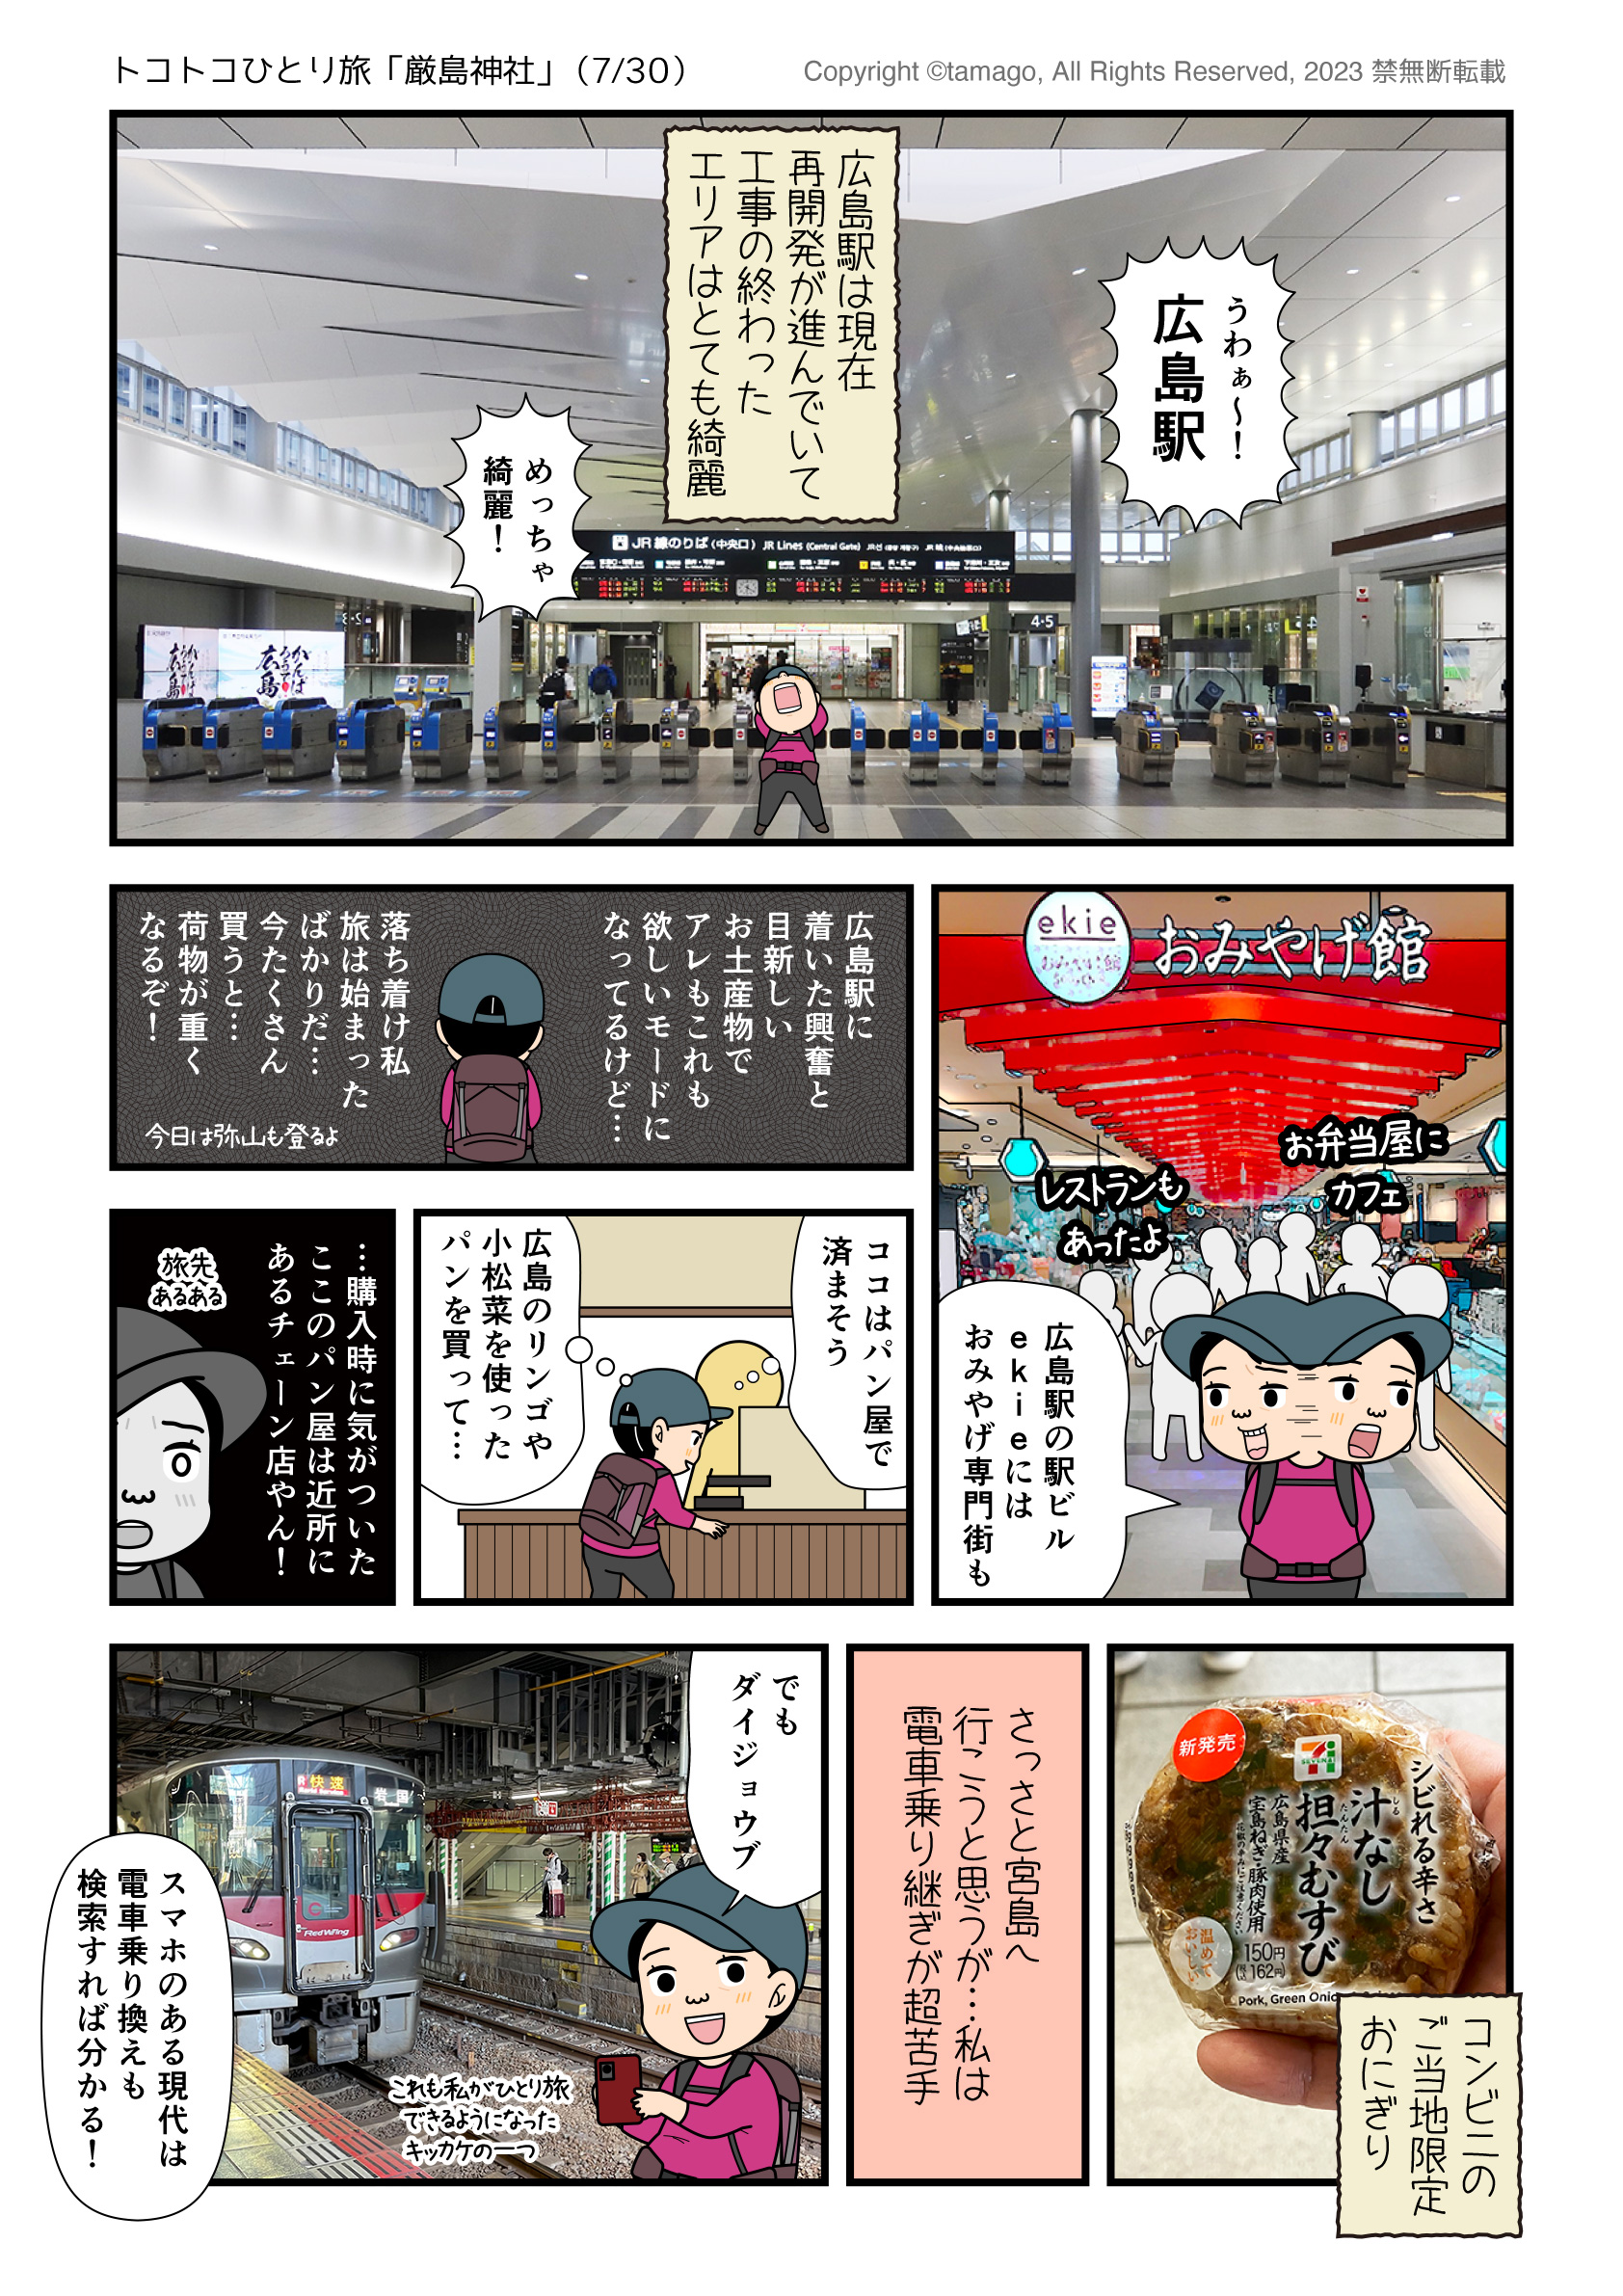 広島駅のゴージャスさとお土産にワクワクする旅漫画